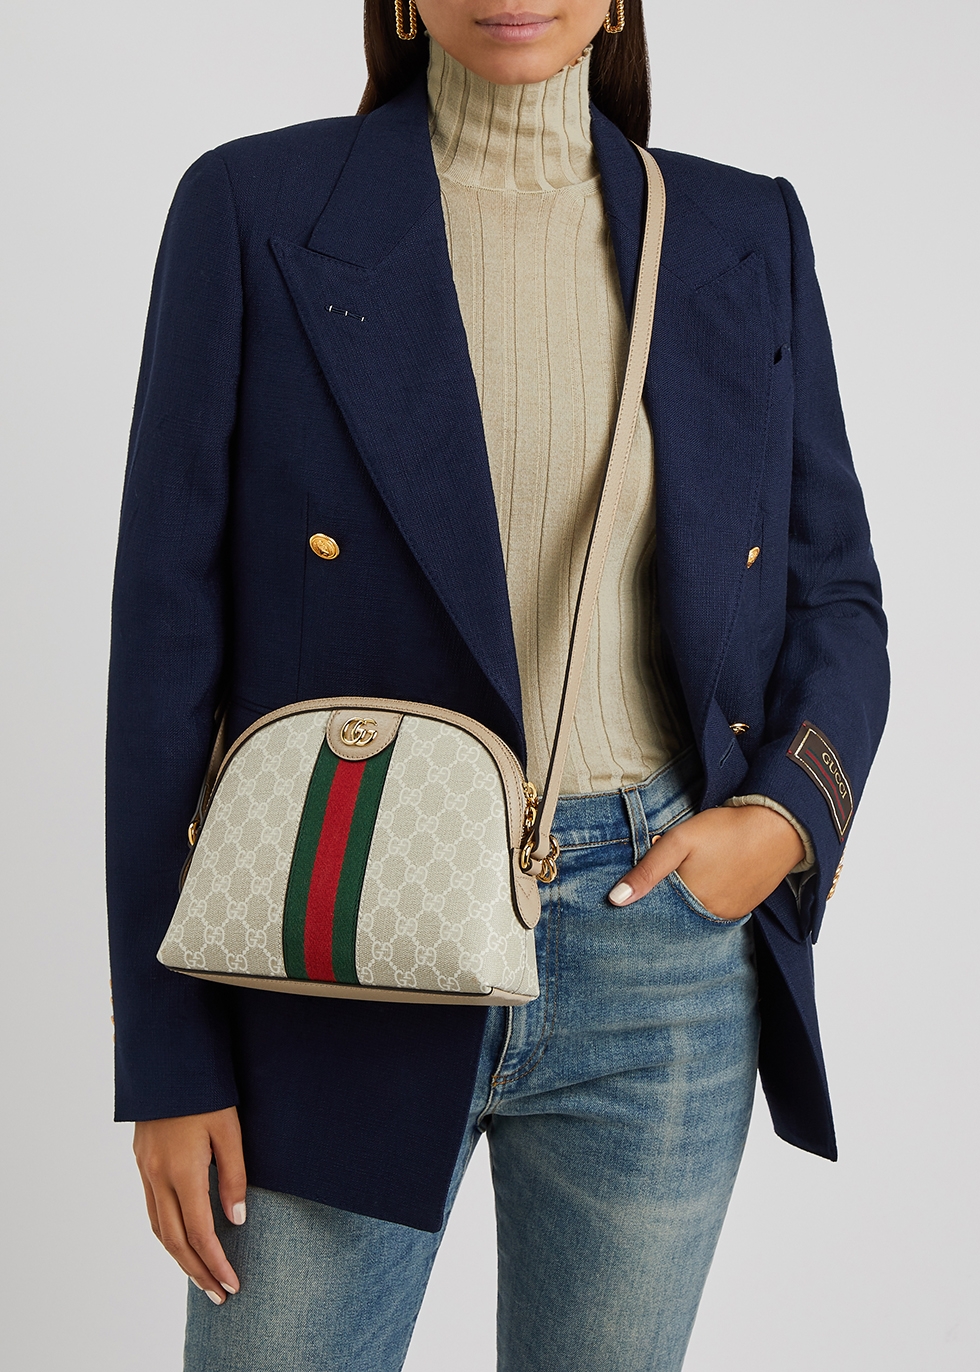 Gucci Ophidia GG monogrammed shoulder bag - Harvey Nichols